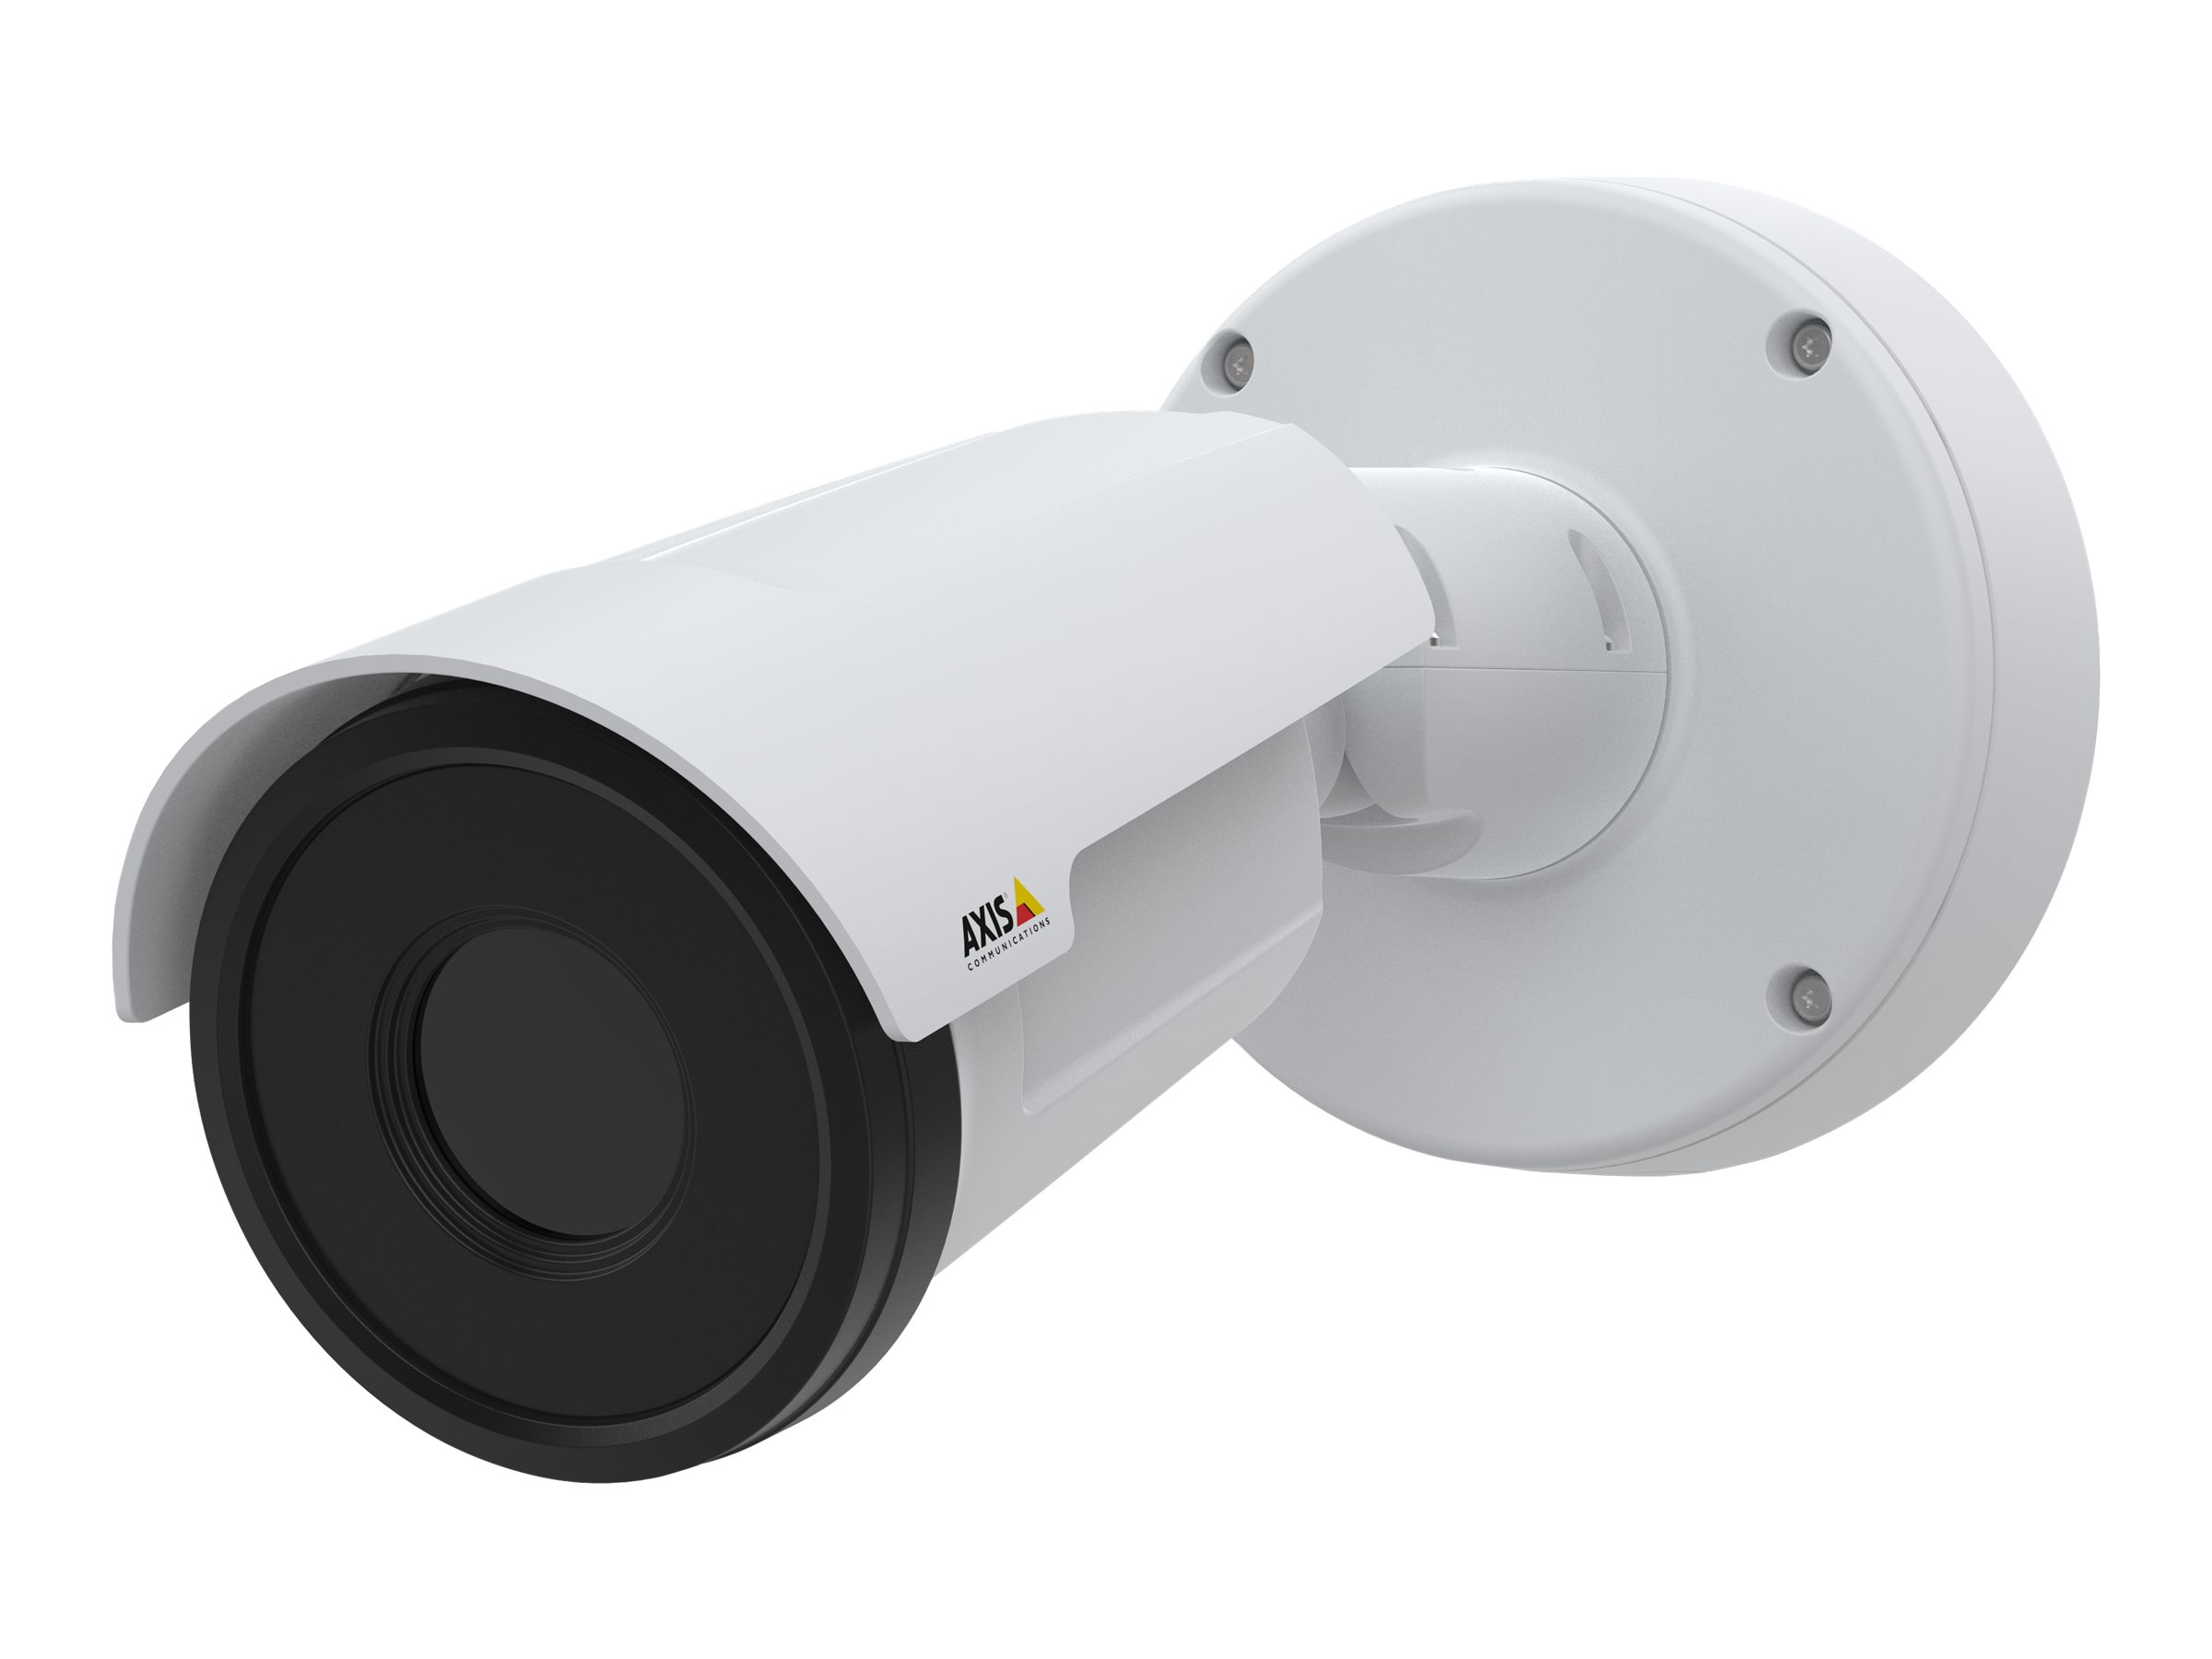 AXIS Q1952-E - Caméra réseau thermique - extérieur - à l'épreuve du vandalisme / résistant aux intempéries - couleur (Jour et nuit) - 640 x 480 - Focale fixe - audio - GbE - MJPEG, H.264, H.265 - CC 12 - 28 V/PoE Classe 3 - 02161-001 - Caméras de sécurité